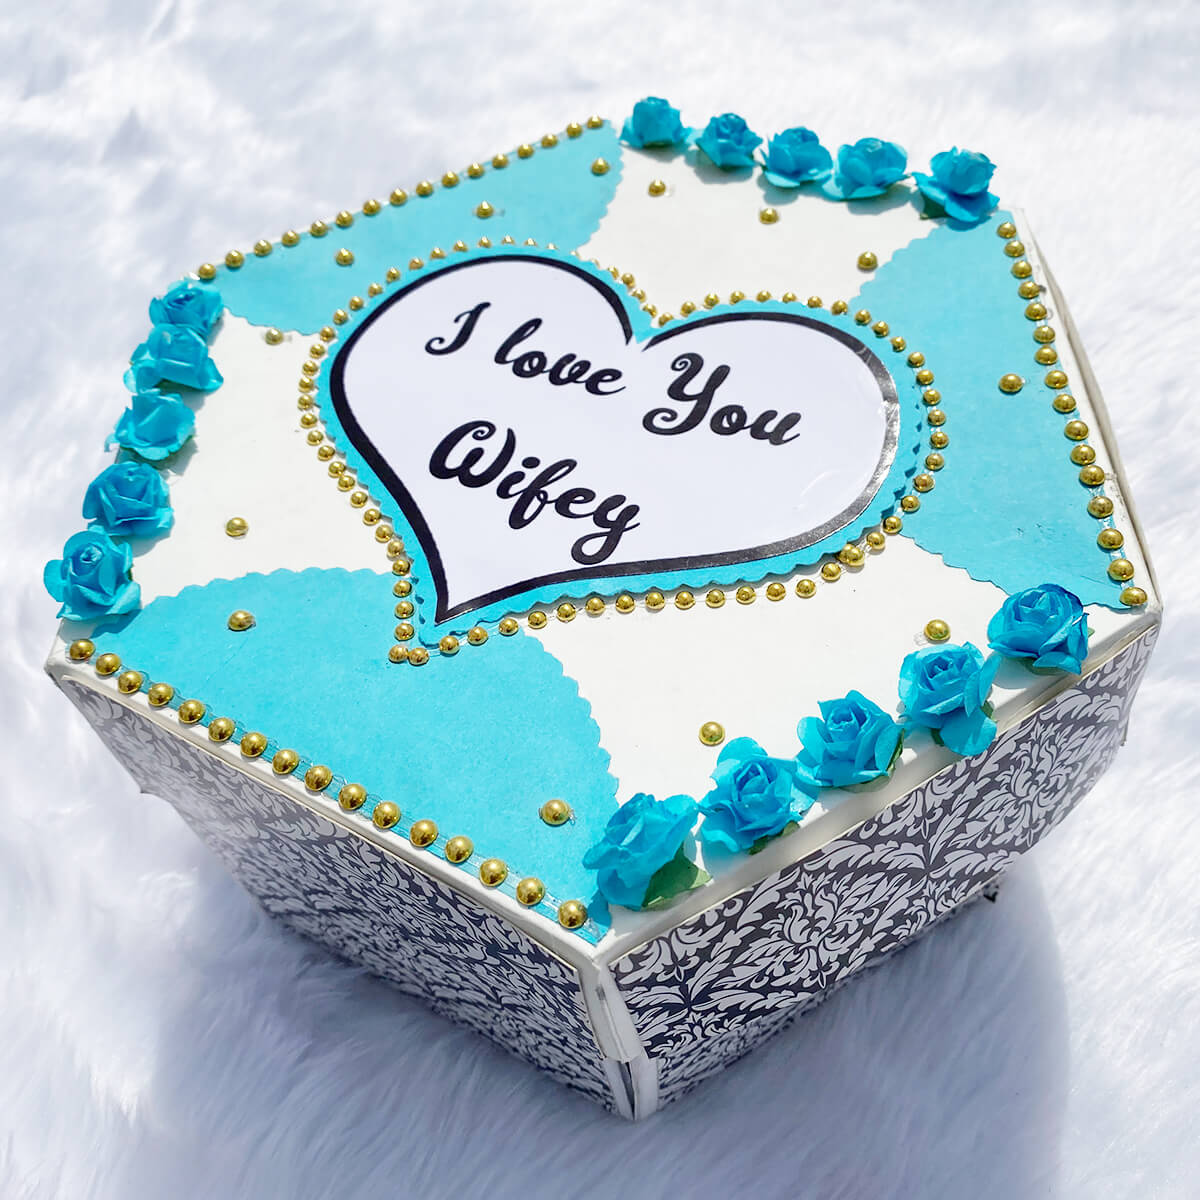 Hexagonal Gift Box For Love